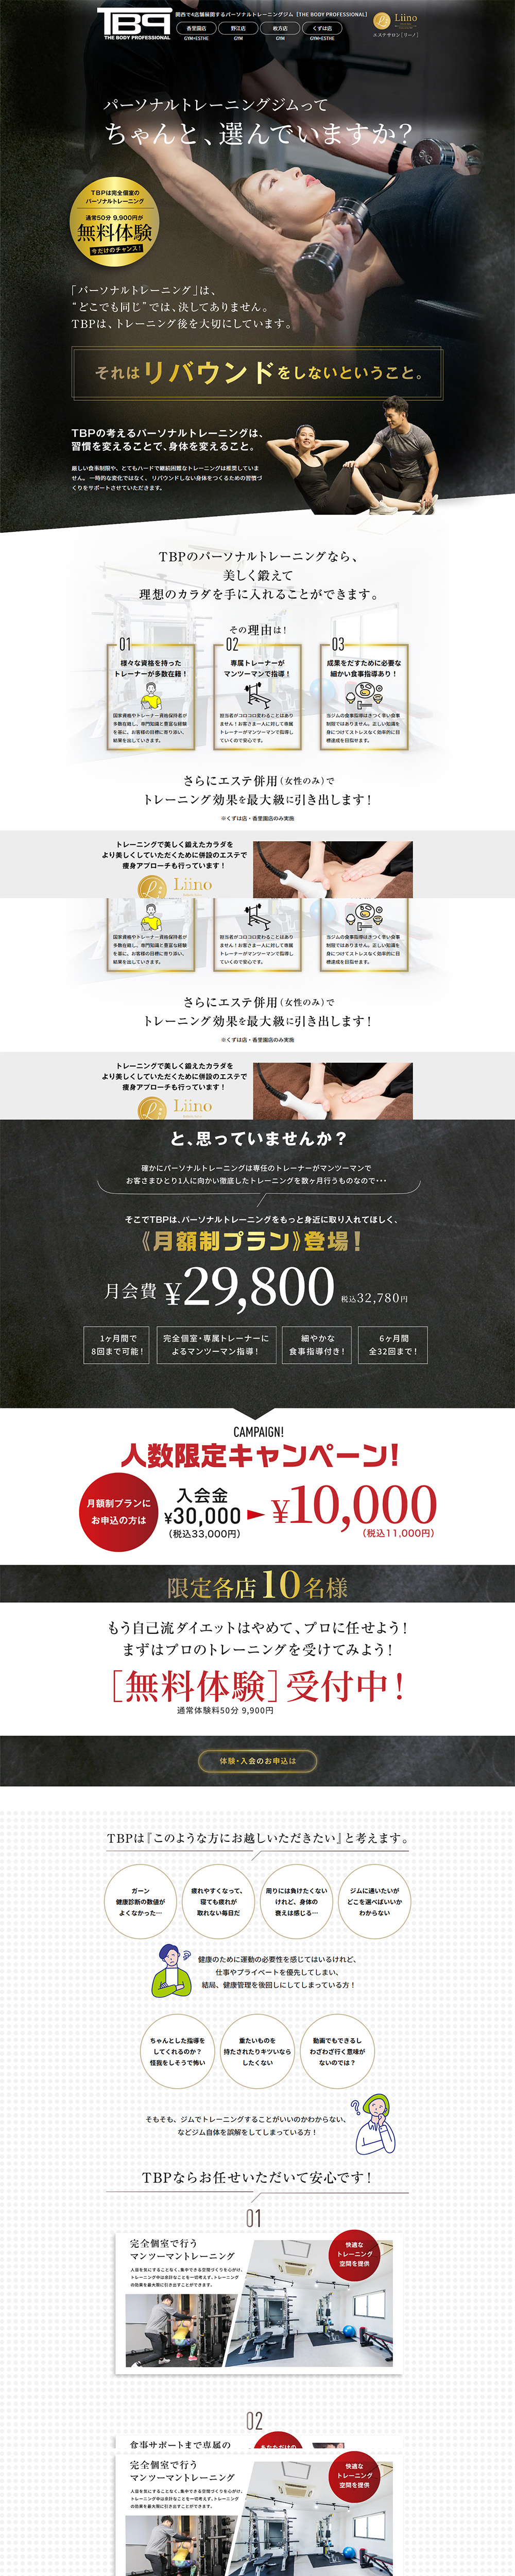 関西で4店舗展開するパーソナルトレーニングジム_pc_1